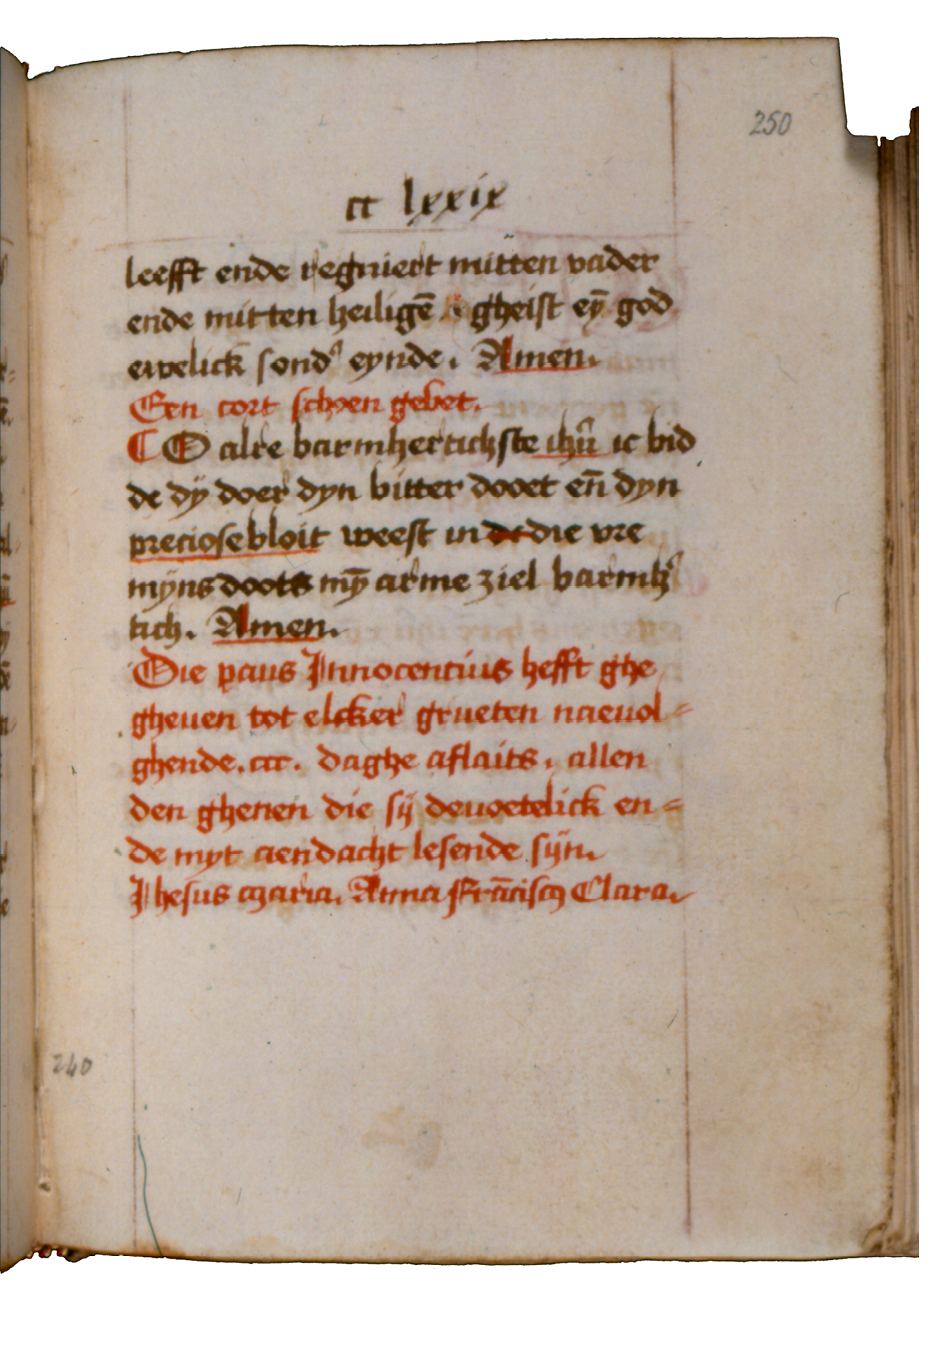 Fig. 8  Rubric revealing Franciscan affinities. London, British Library, Add. Ms. 24332, fol. 250r (modern foliation).